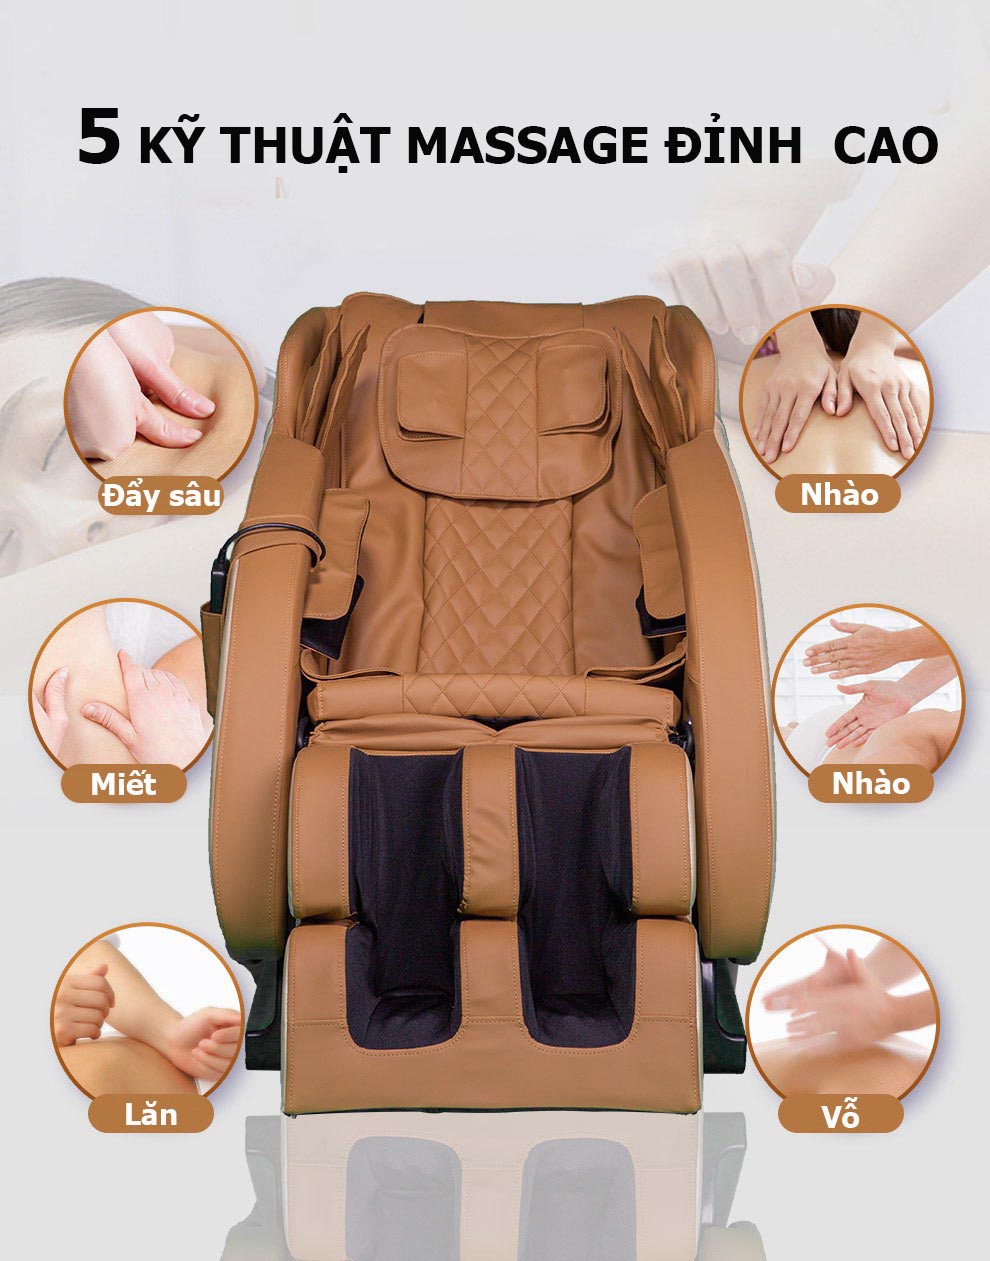 5 kỹ thuật massage ghế massage OKINAWA NO 6000